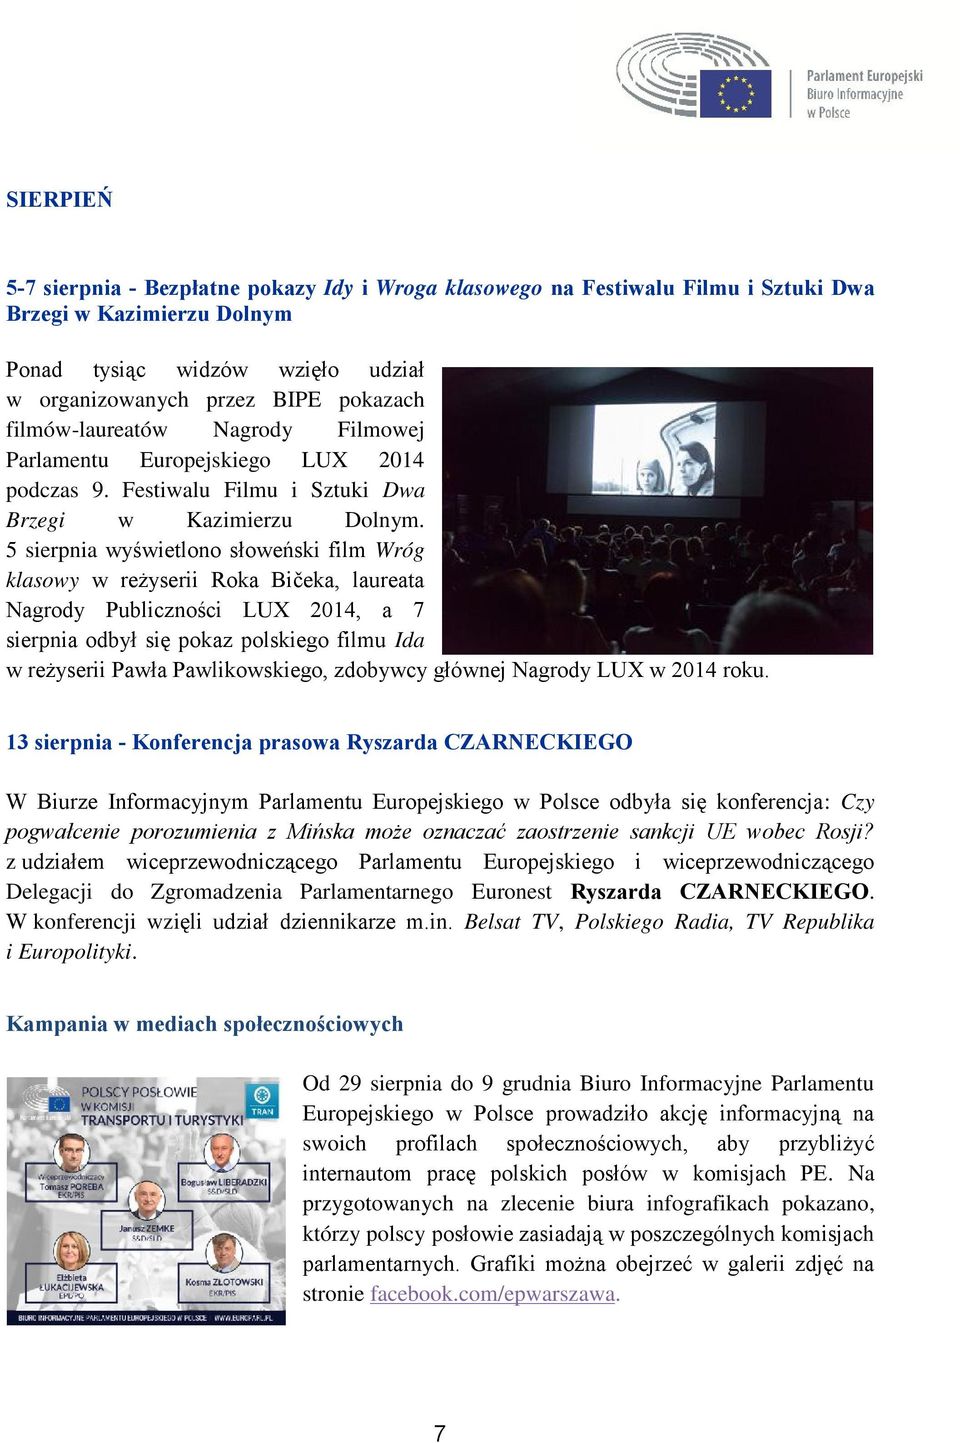 5 sierpnia wyświetlono słoweński film Wróg klasowy w reżyserii Roka Bičeka, laureata Nagrody Publiczności LUX 2014, a 7 sierpnia odbył się pokaz polskiego filmu Ida w reżyserii Pawła Pawlikowskiego,